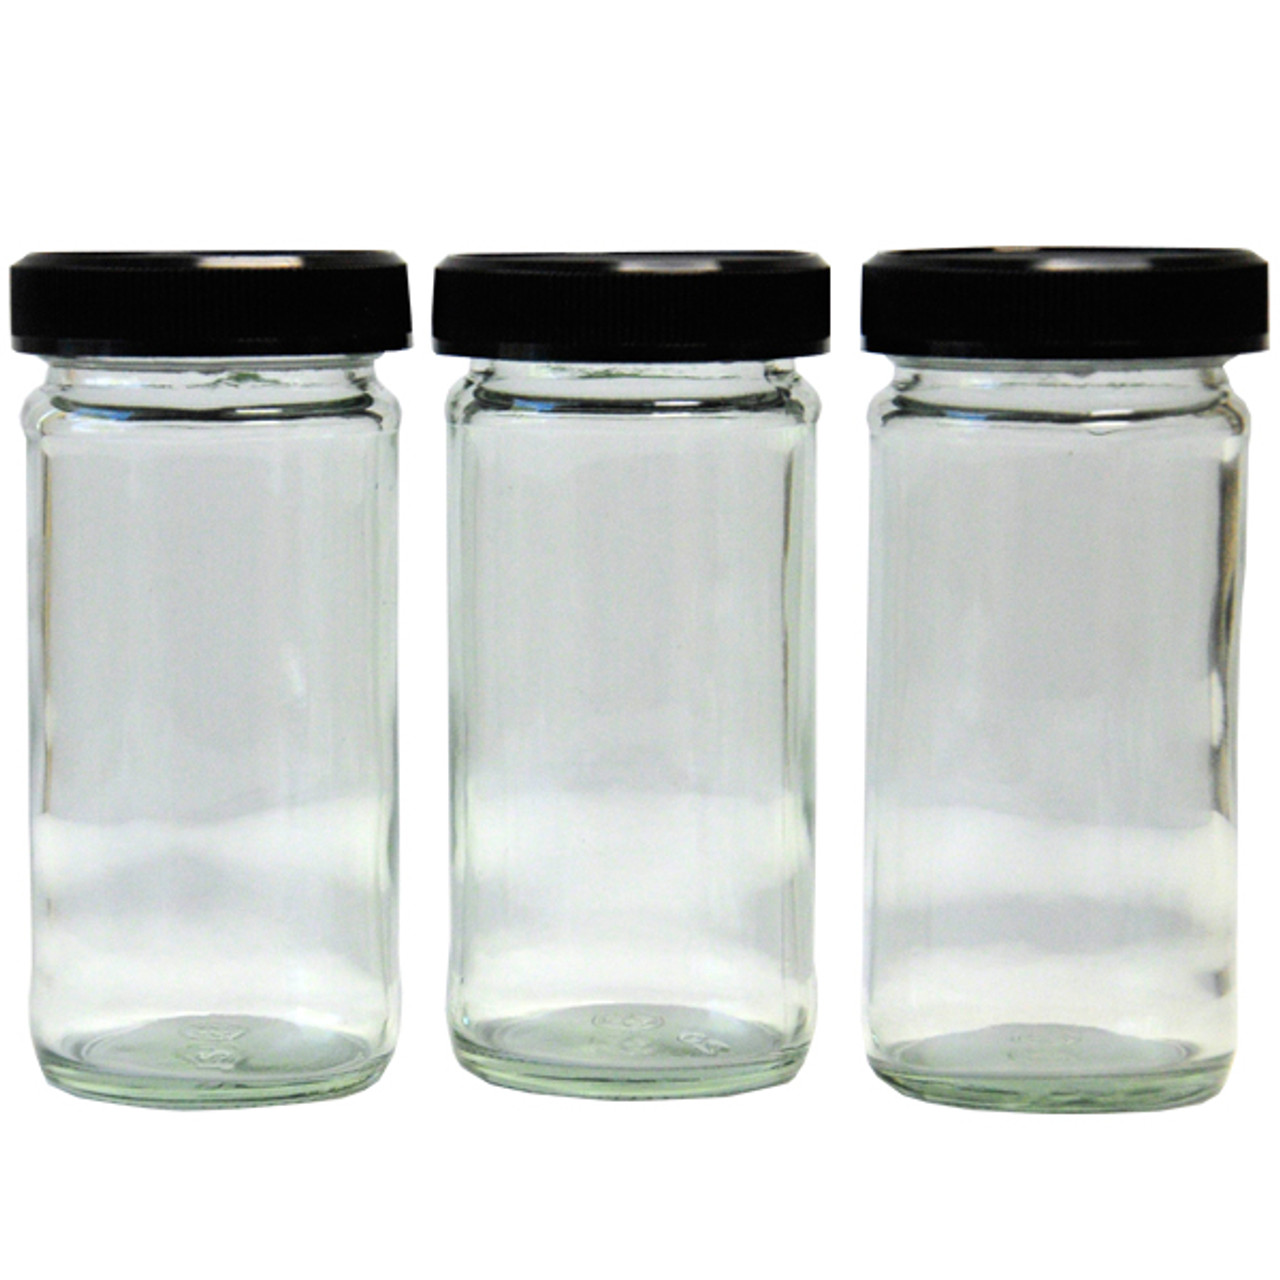 Round Black Lid Spice Jars â€” Set of 3